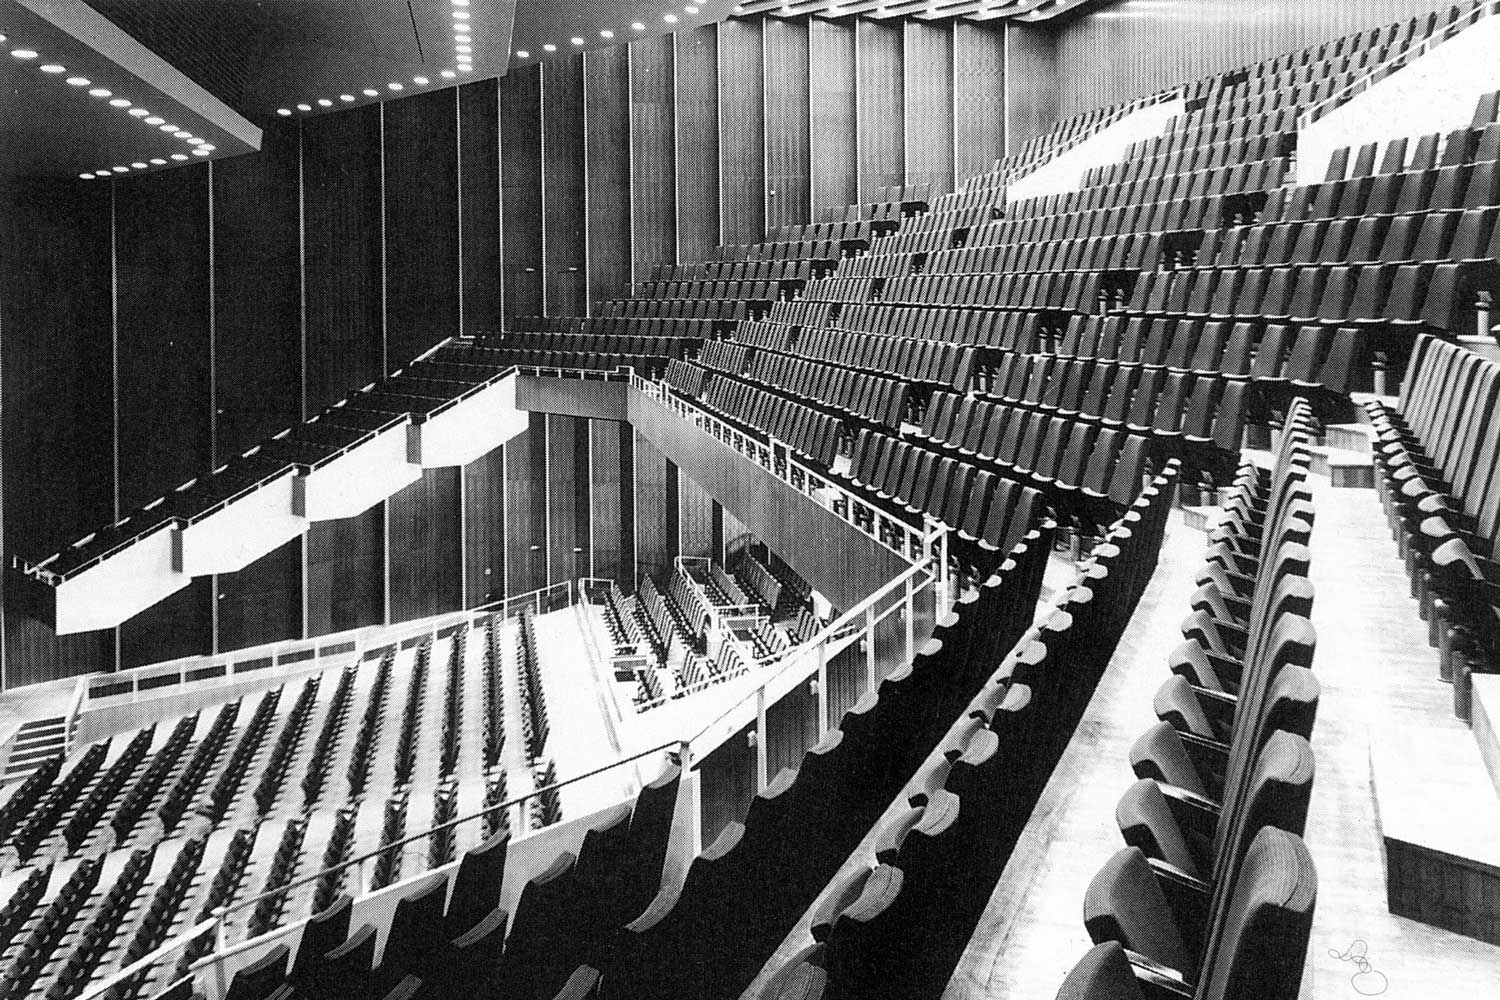 Foto, schwarz-weiß: Blick in den leeren Zuschauerraum mit ansteigenden Reihen aus Klappsitzen.